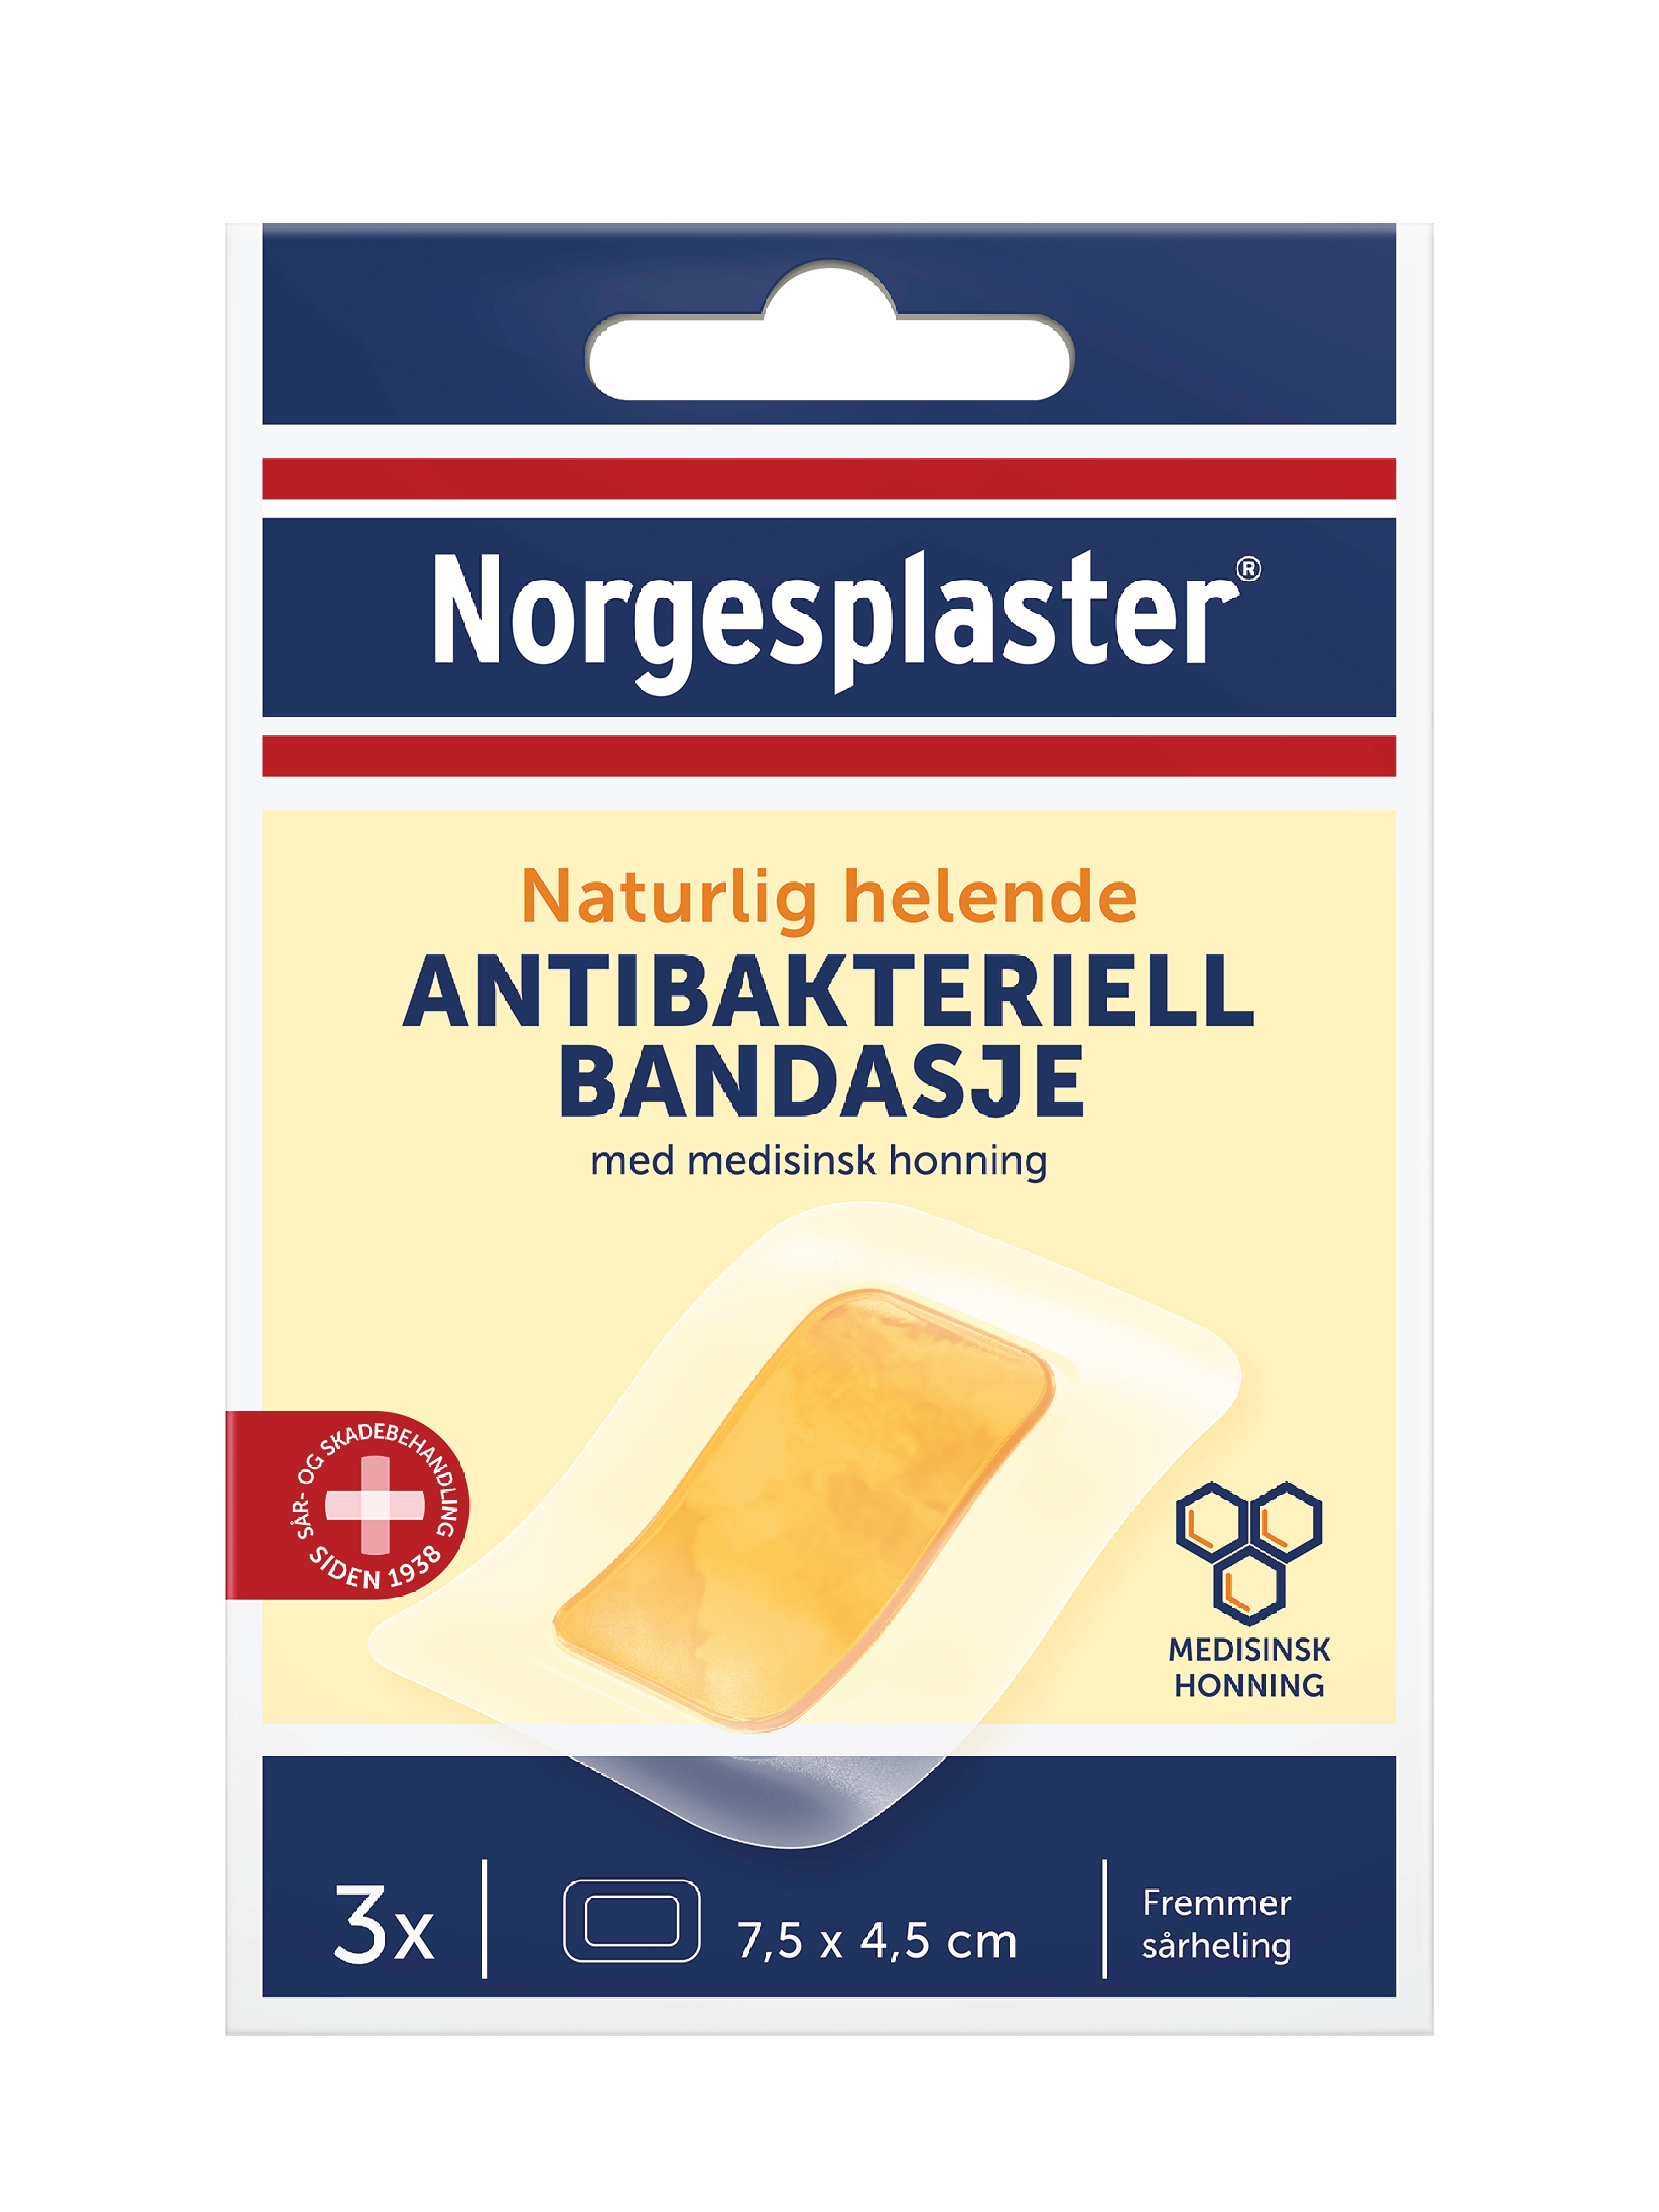 Norgesplaster Antibakteriell Bandasje, 7,5 x 4,5 cm, 3 stk.